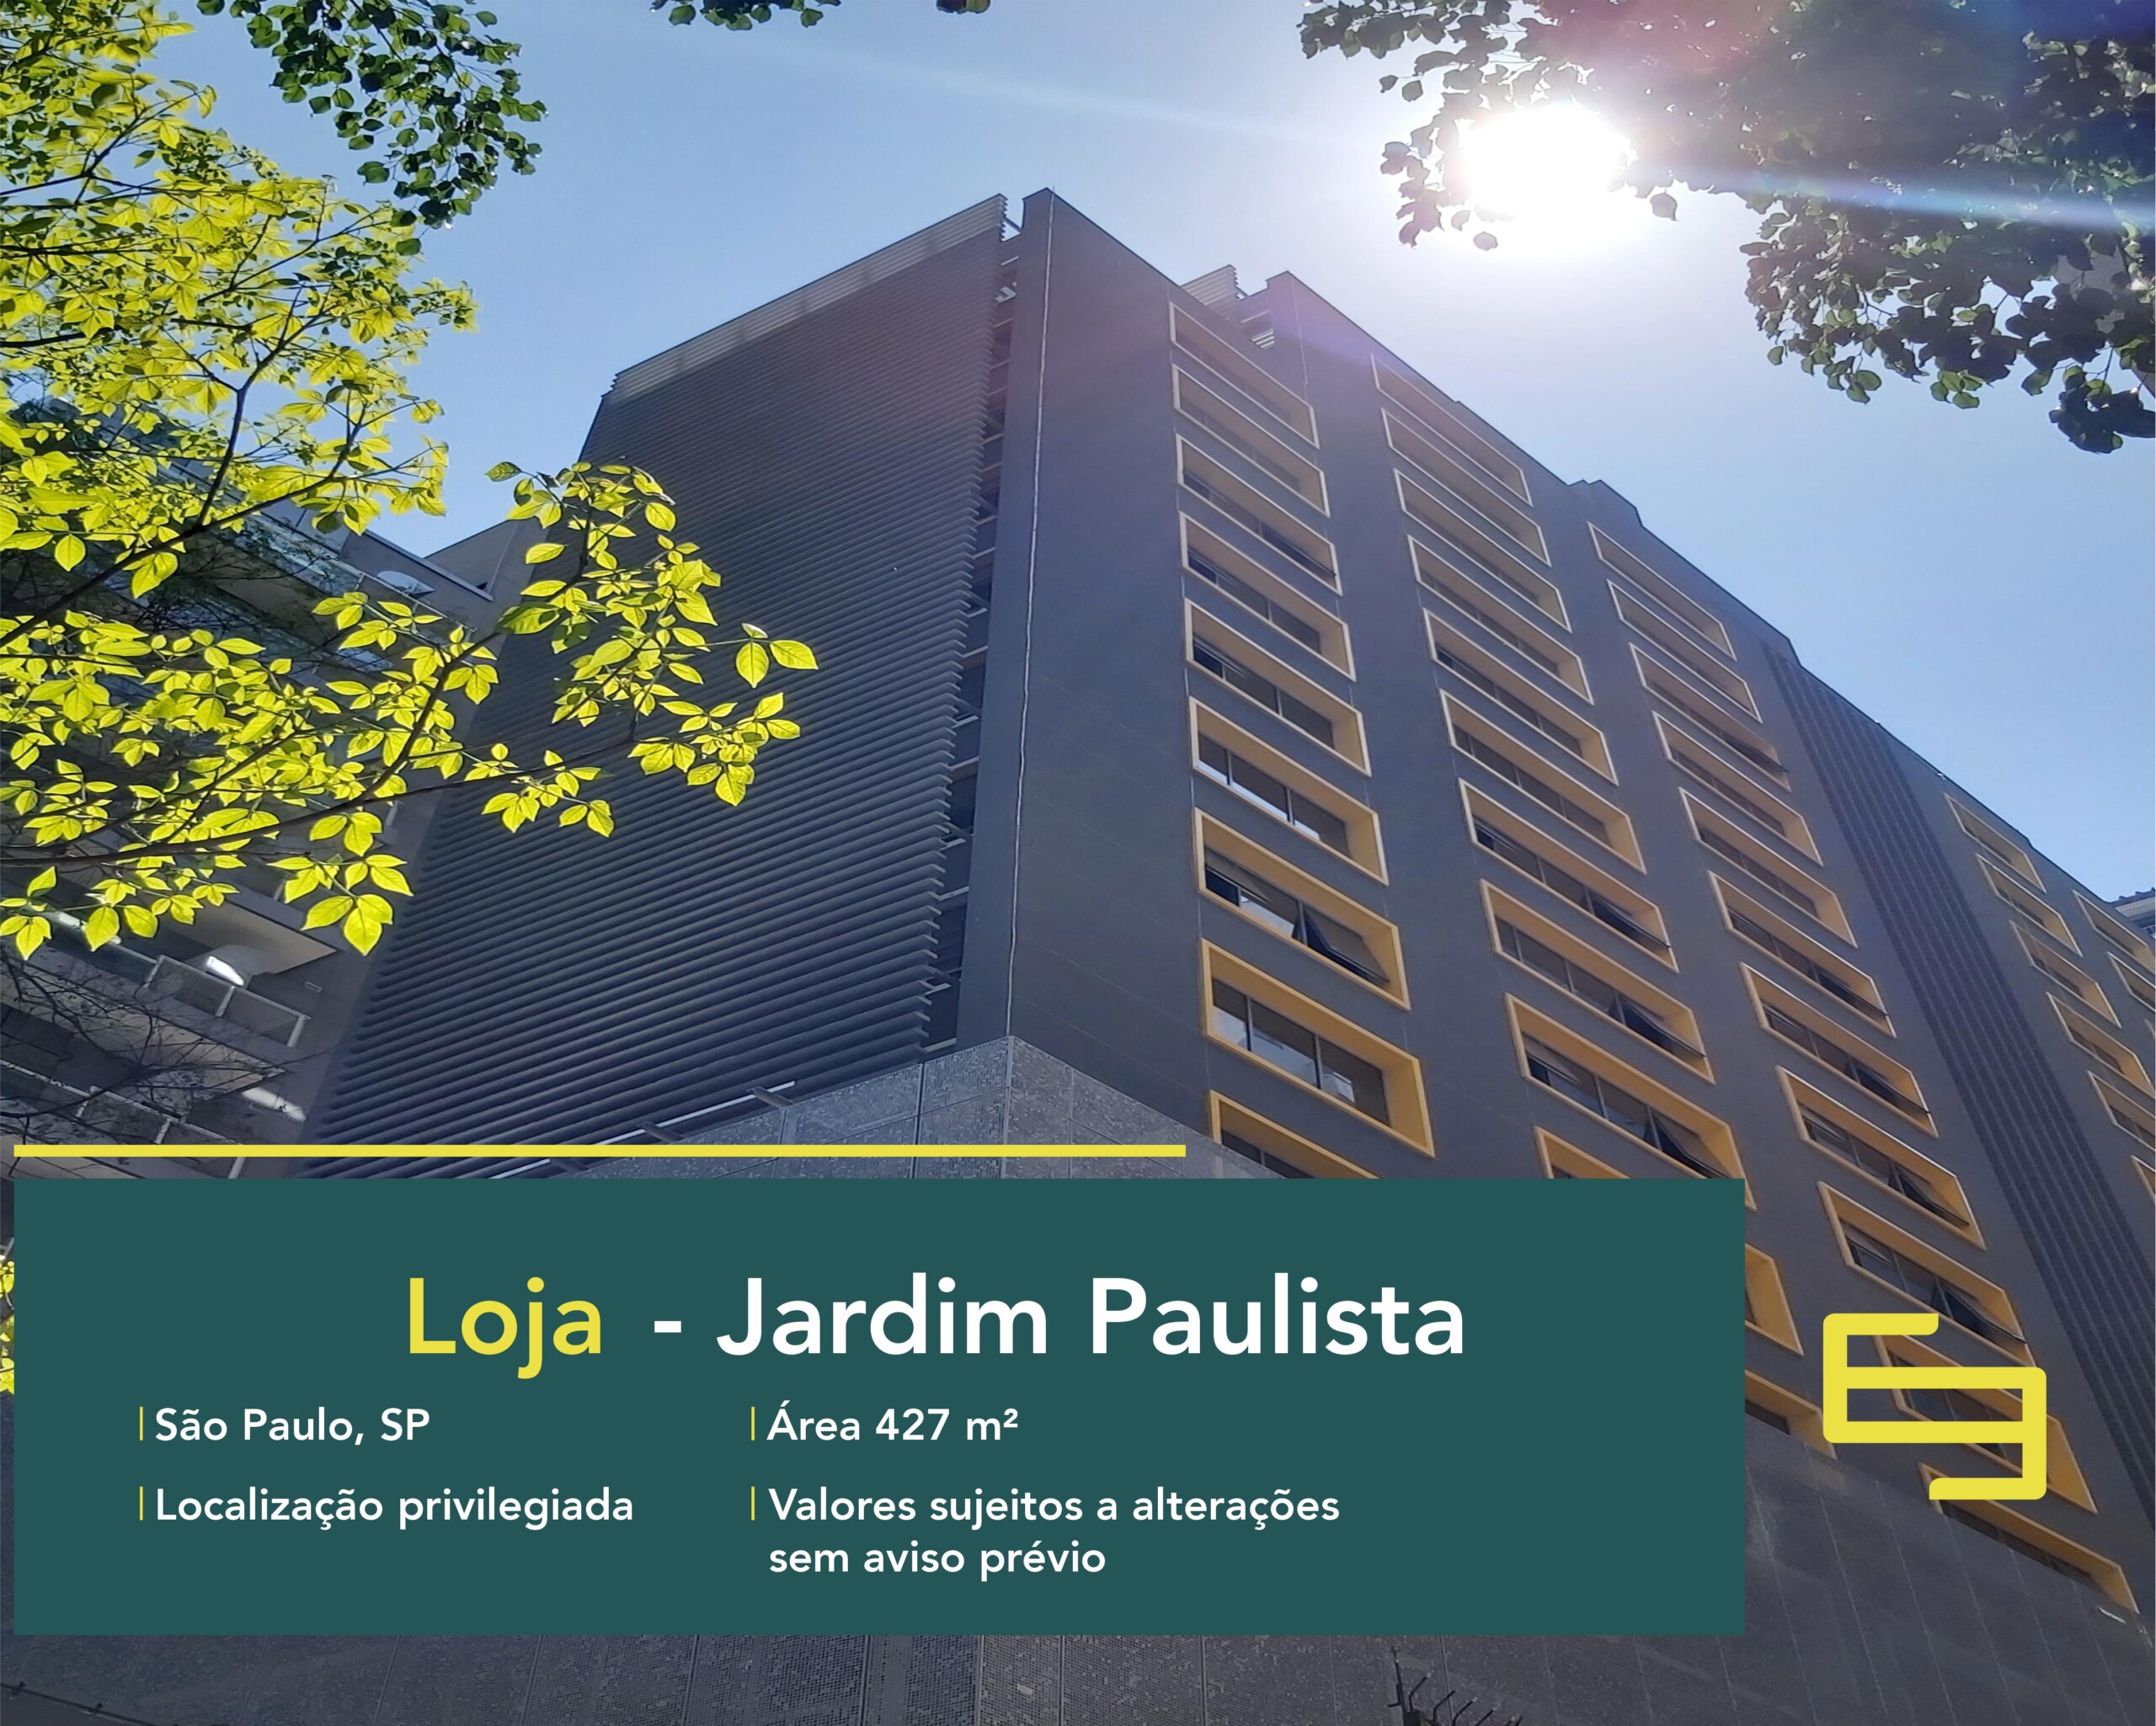 Loja para alugar no Jardim Paulista em São Paulo, excelente localização! O estabelecimento comercial conta, sobretudo, com área de 427 m².